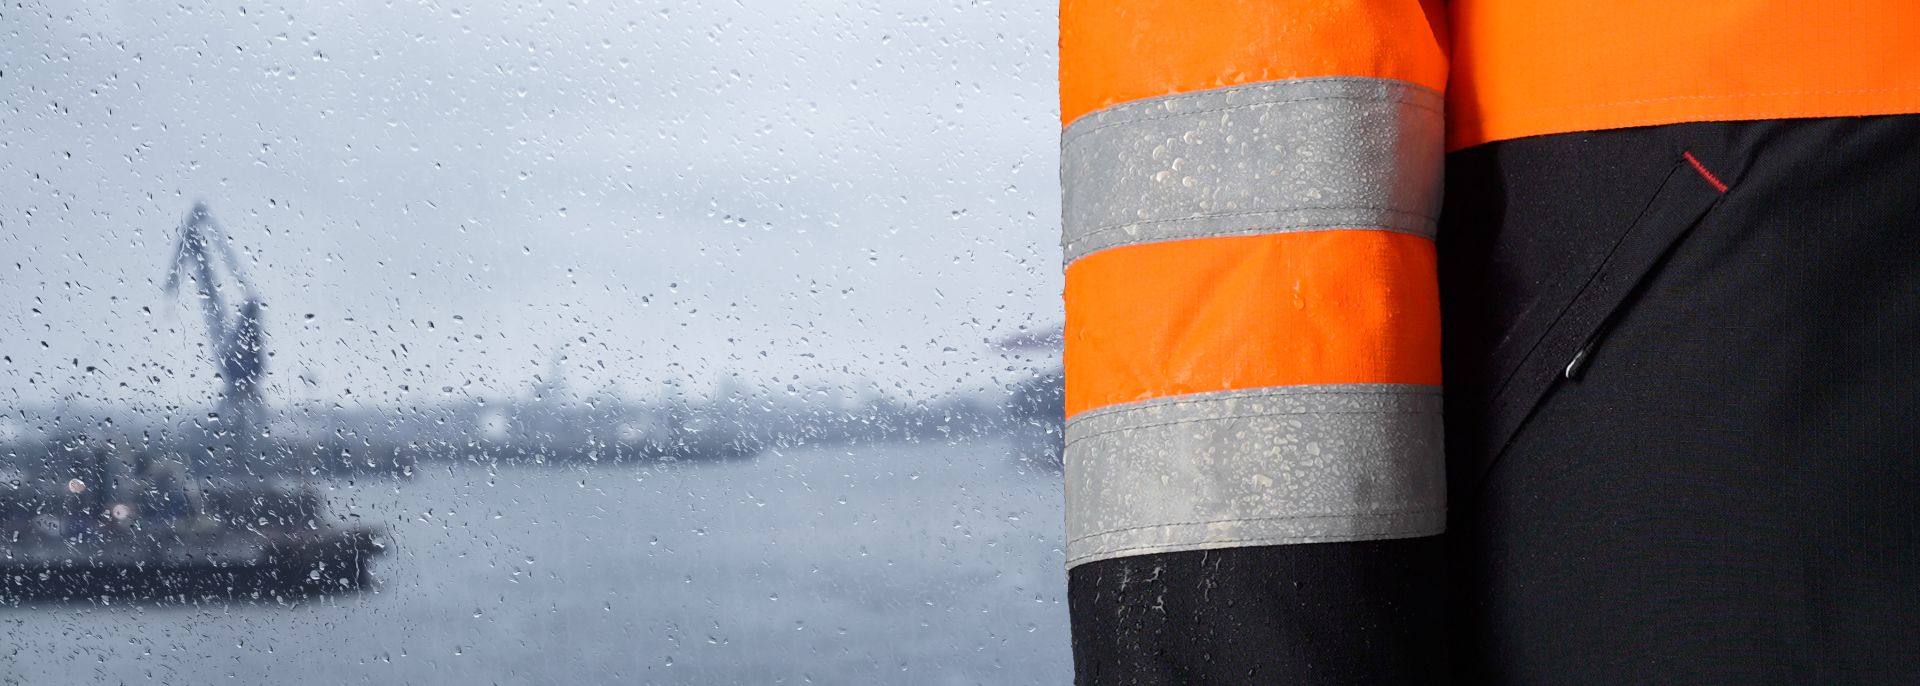 Die neue KANGIA Serie: Innovative Arbeitskleidung für Arbeit unter extremen Wetterbedingungen